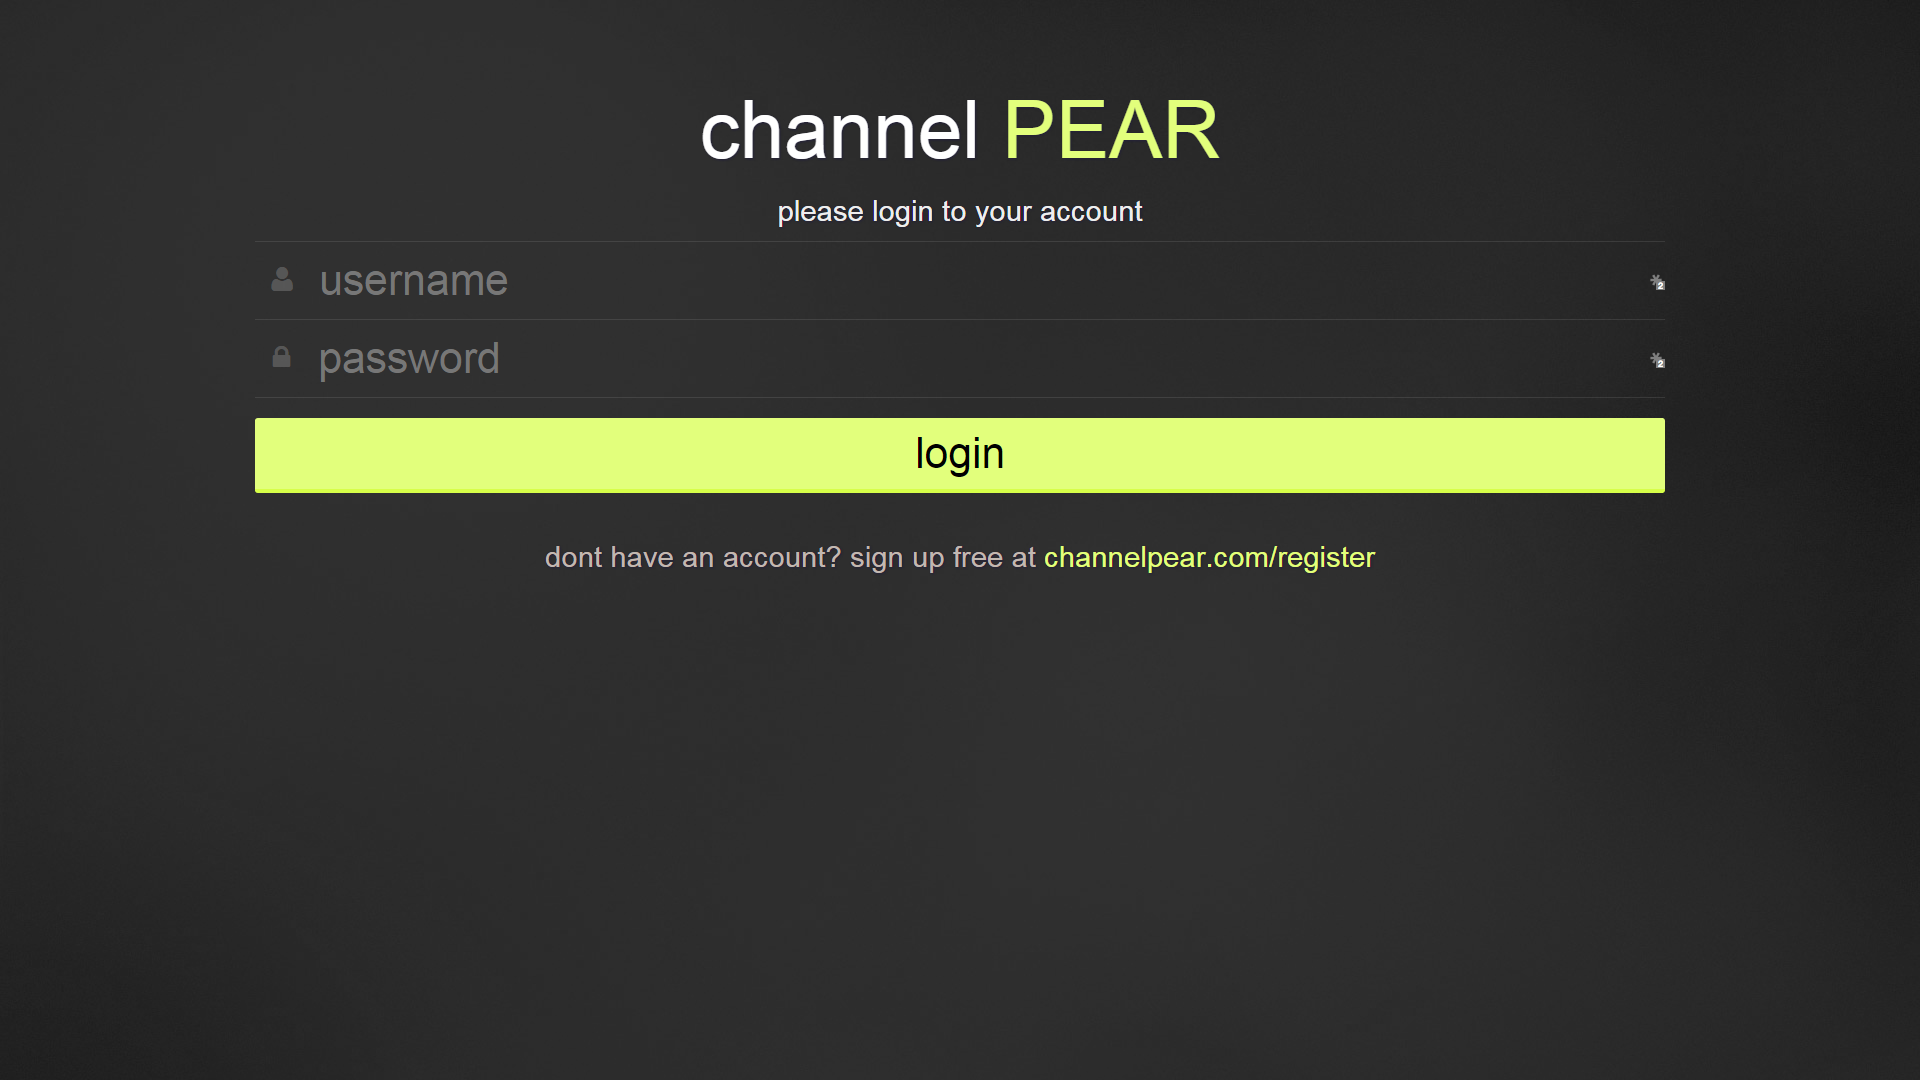 channel PEAR login page on Firestick